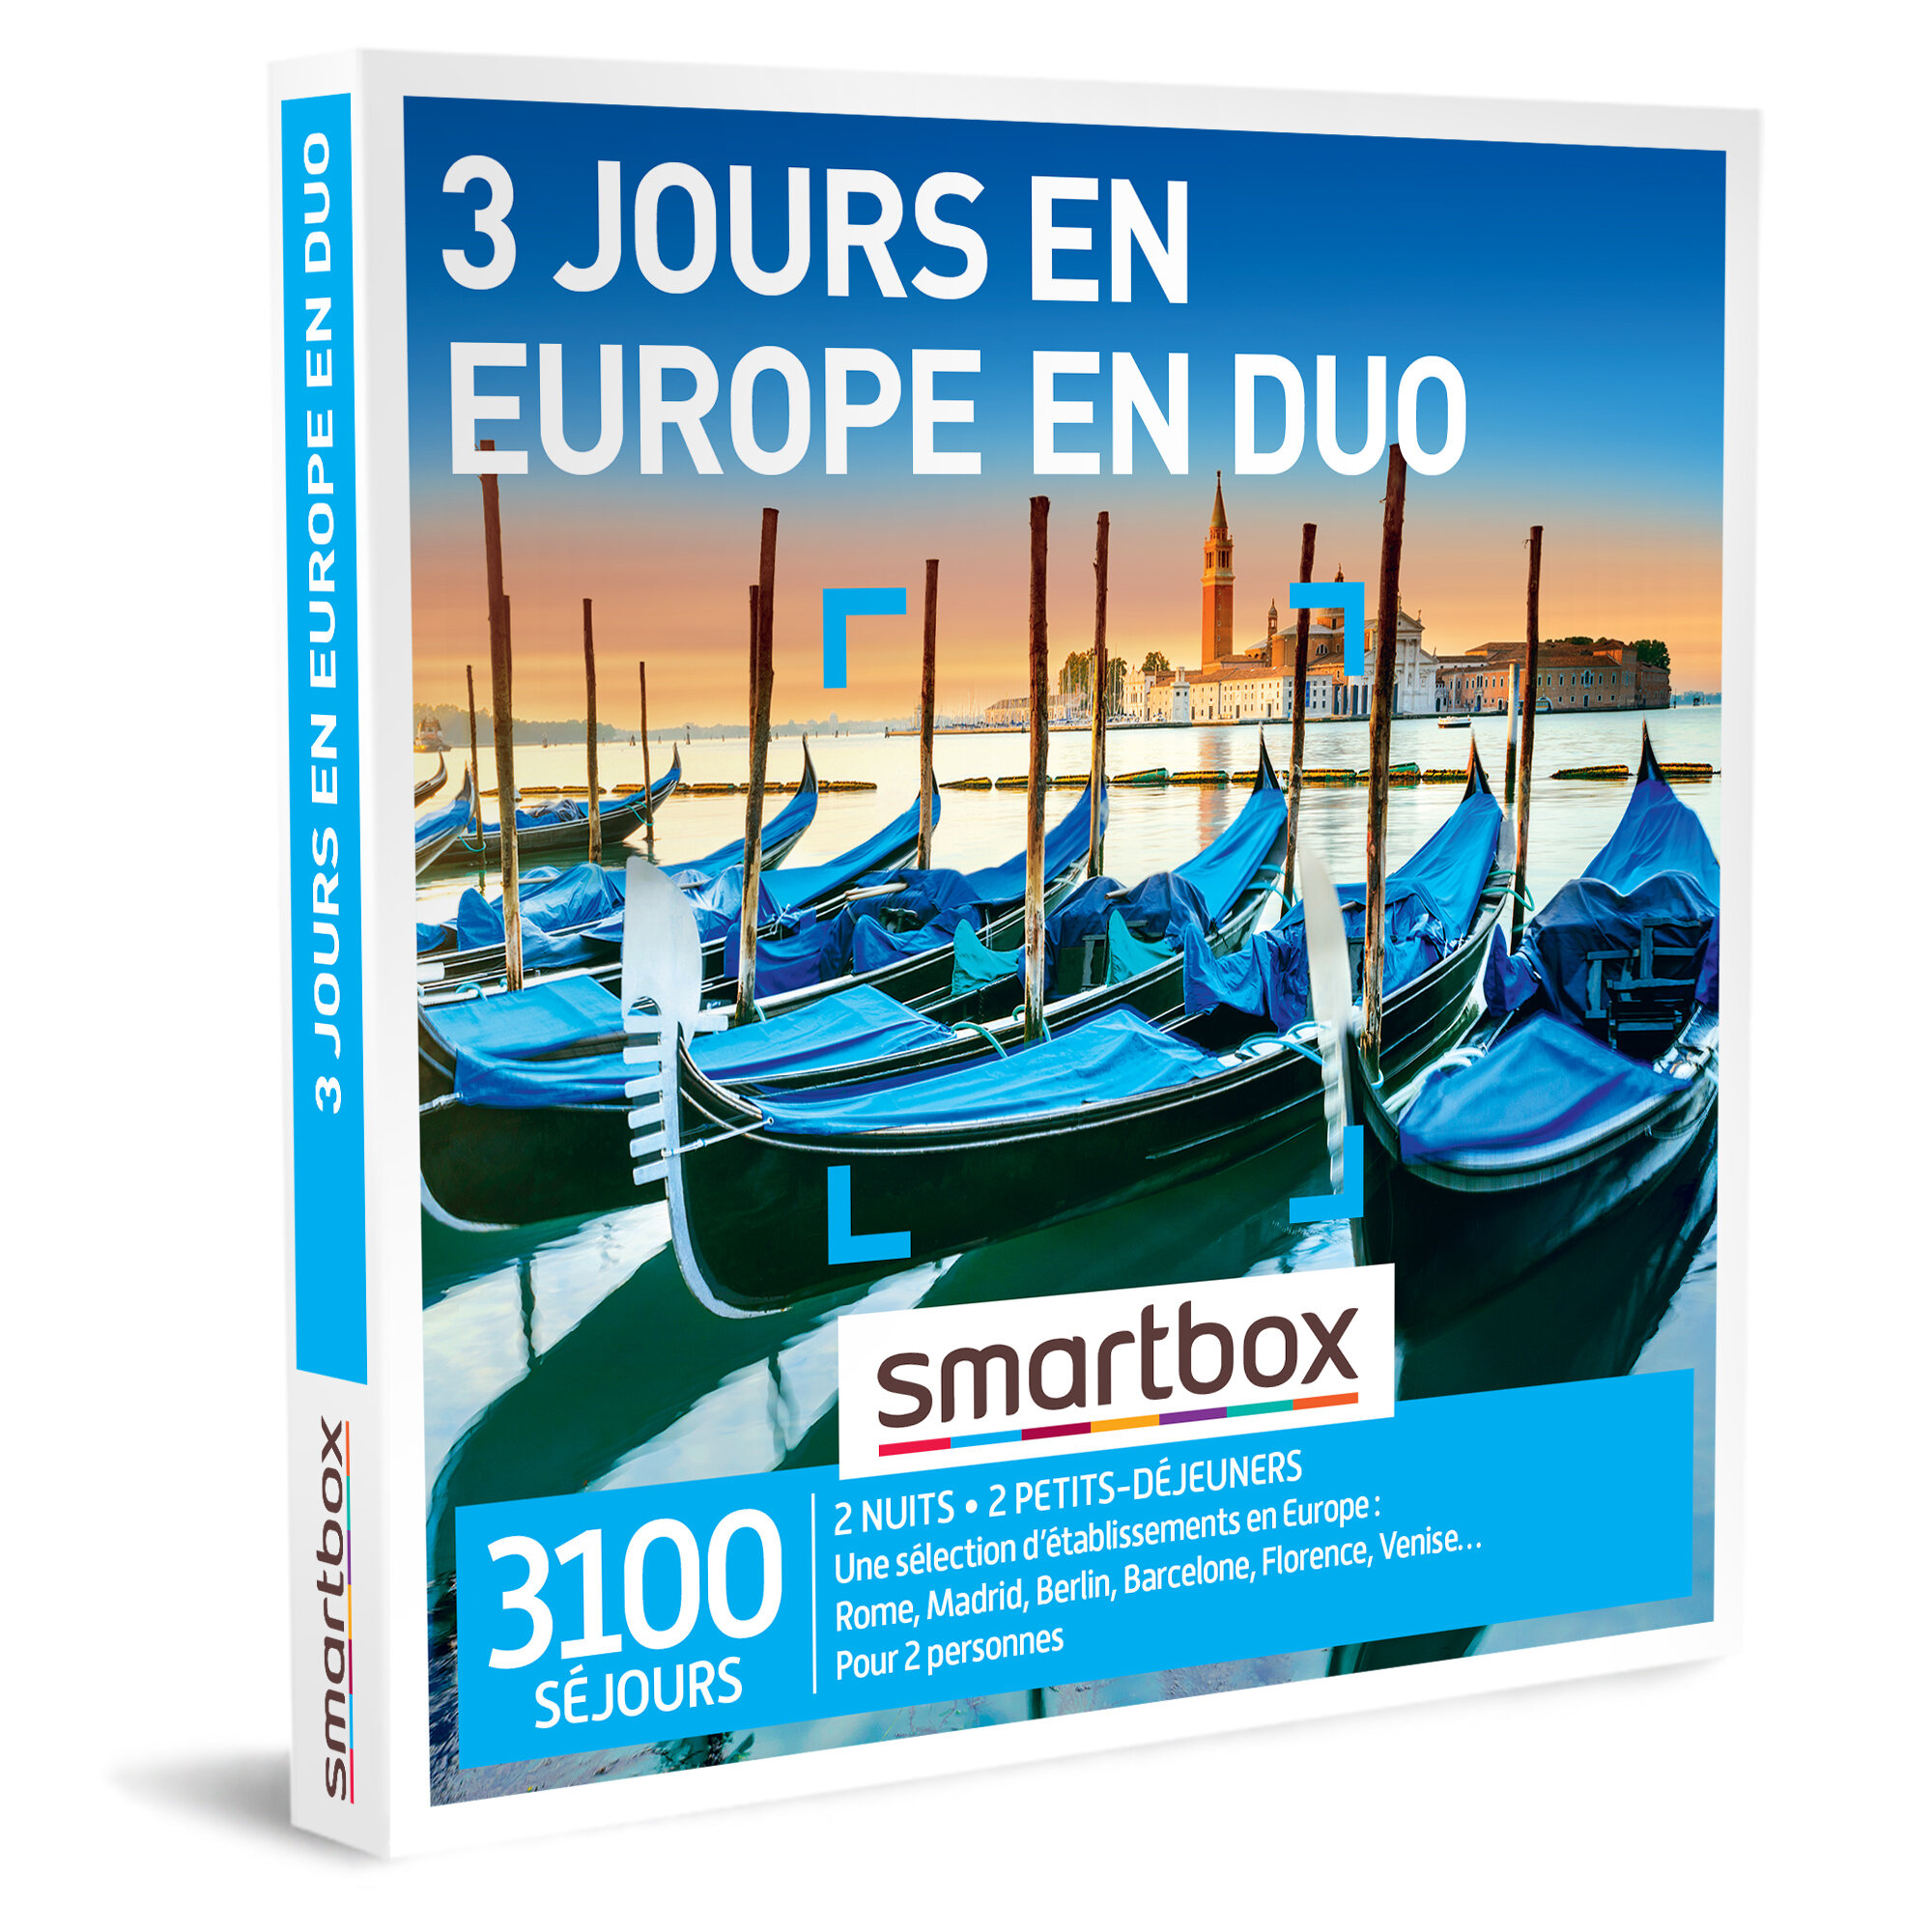 SMARTBOX - Coffret Cadeau - 3 JOURS EN EUROPE EN DUO - 2 nuits avec petits-déjeuners pour 2 personnes